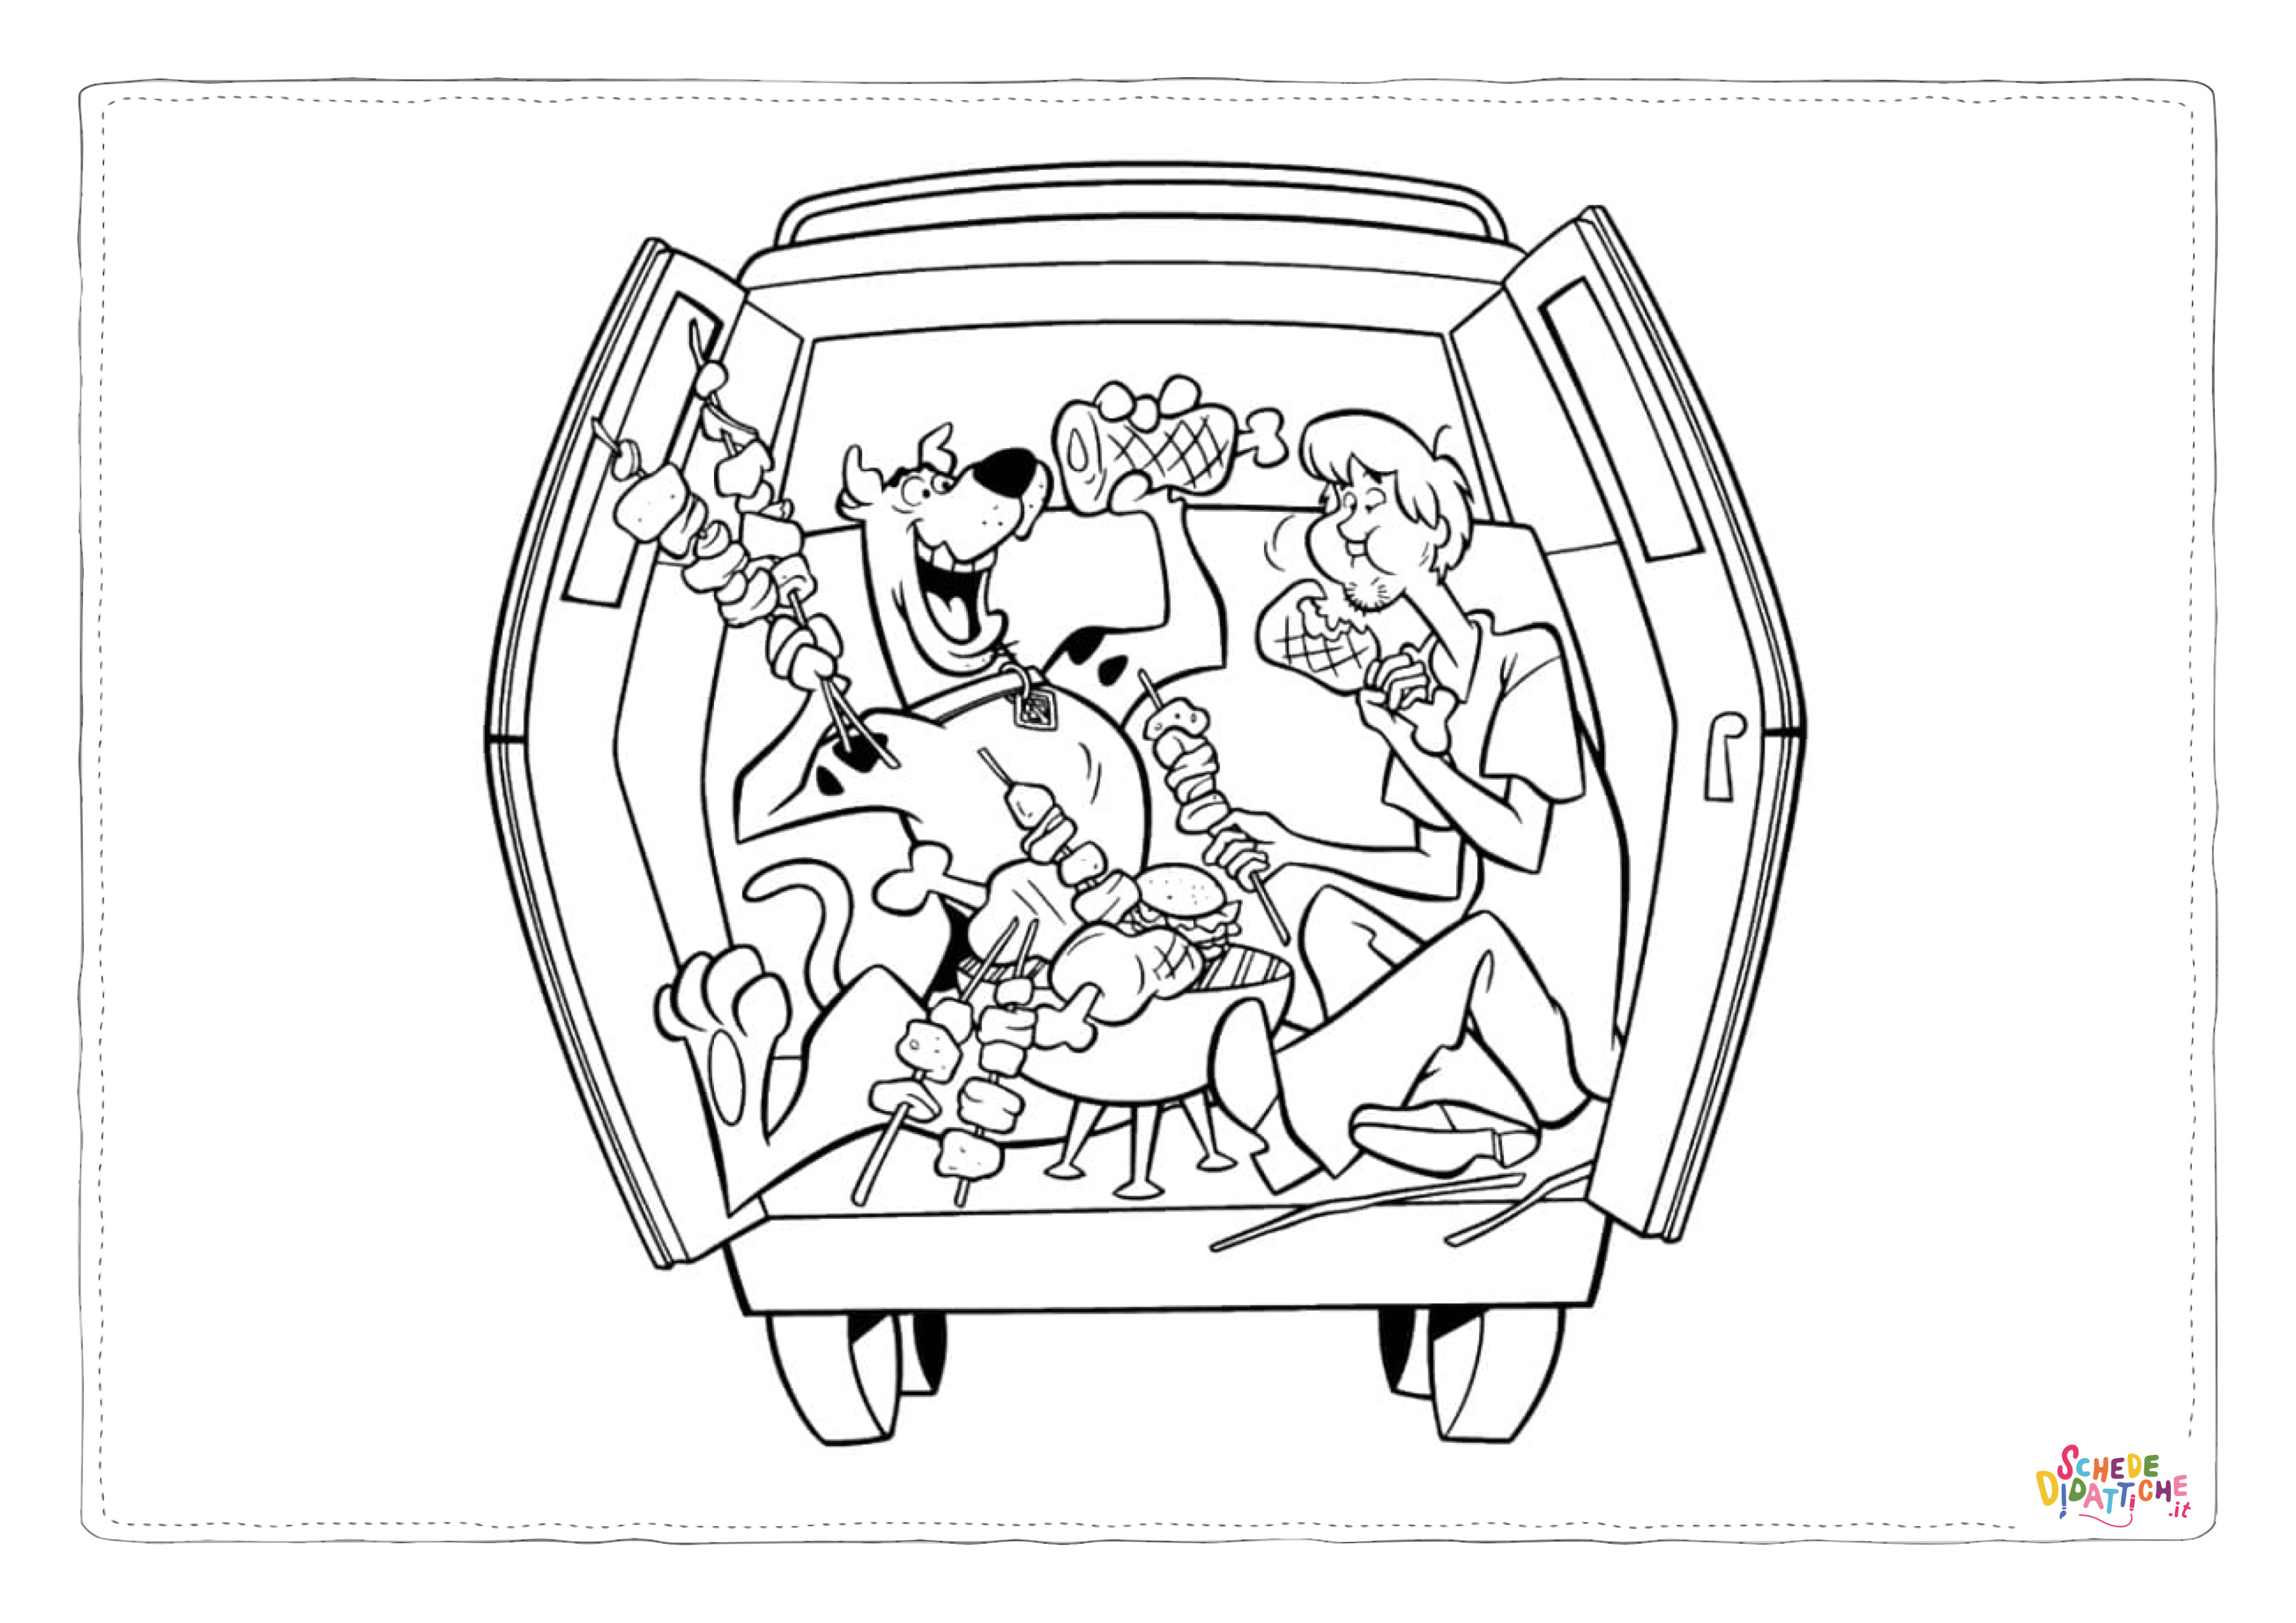 Disegno di Scooby Doo da stampare e colorare 131